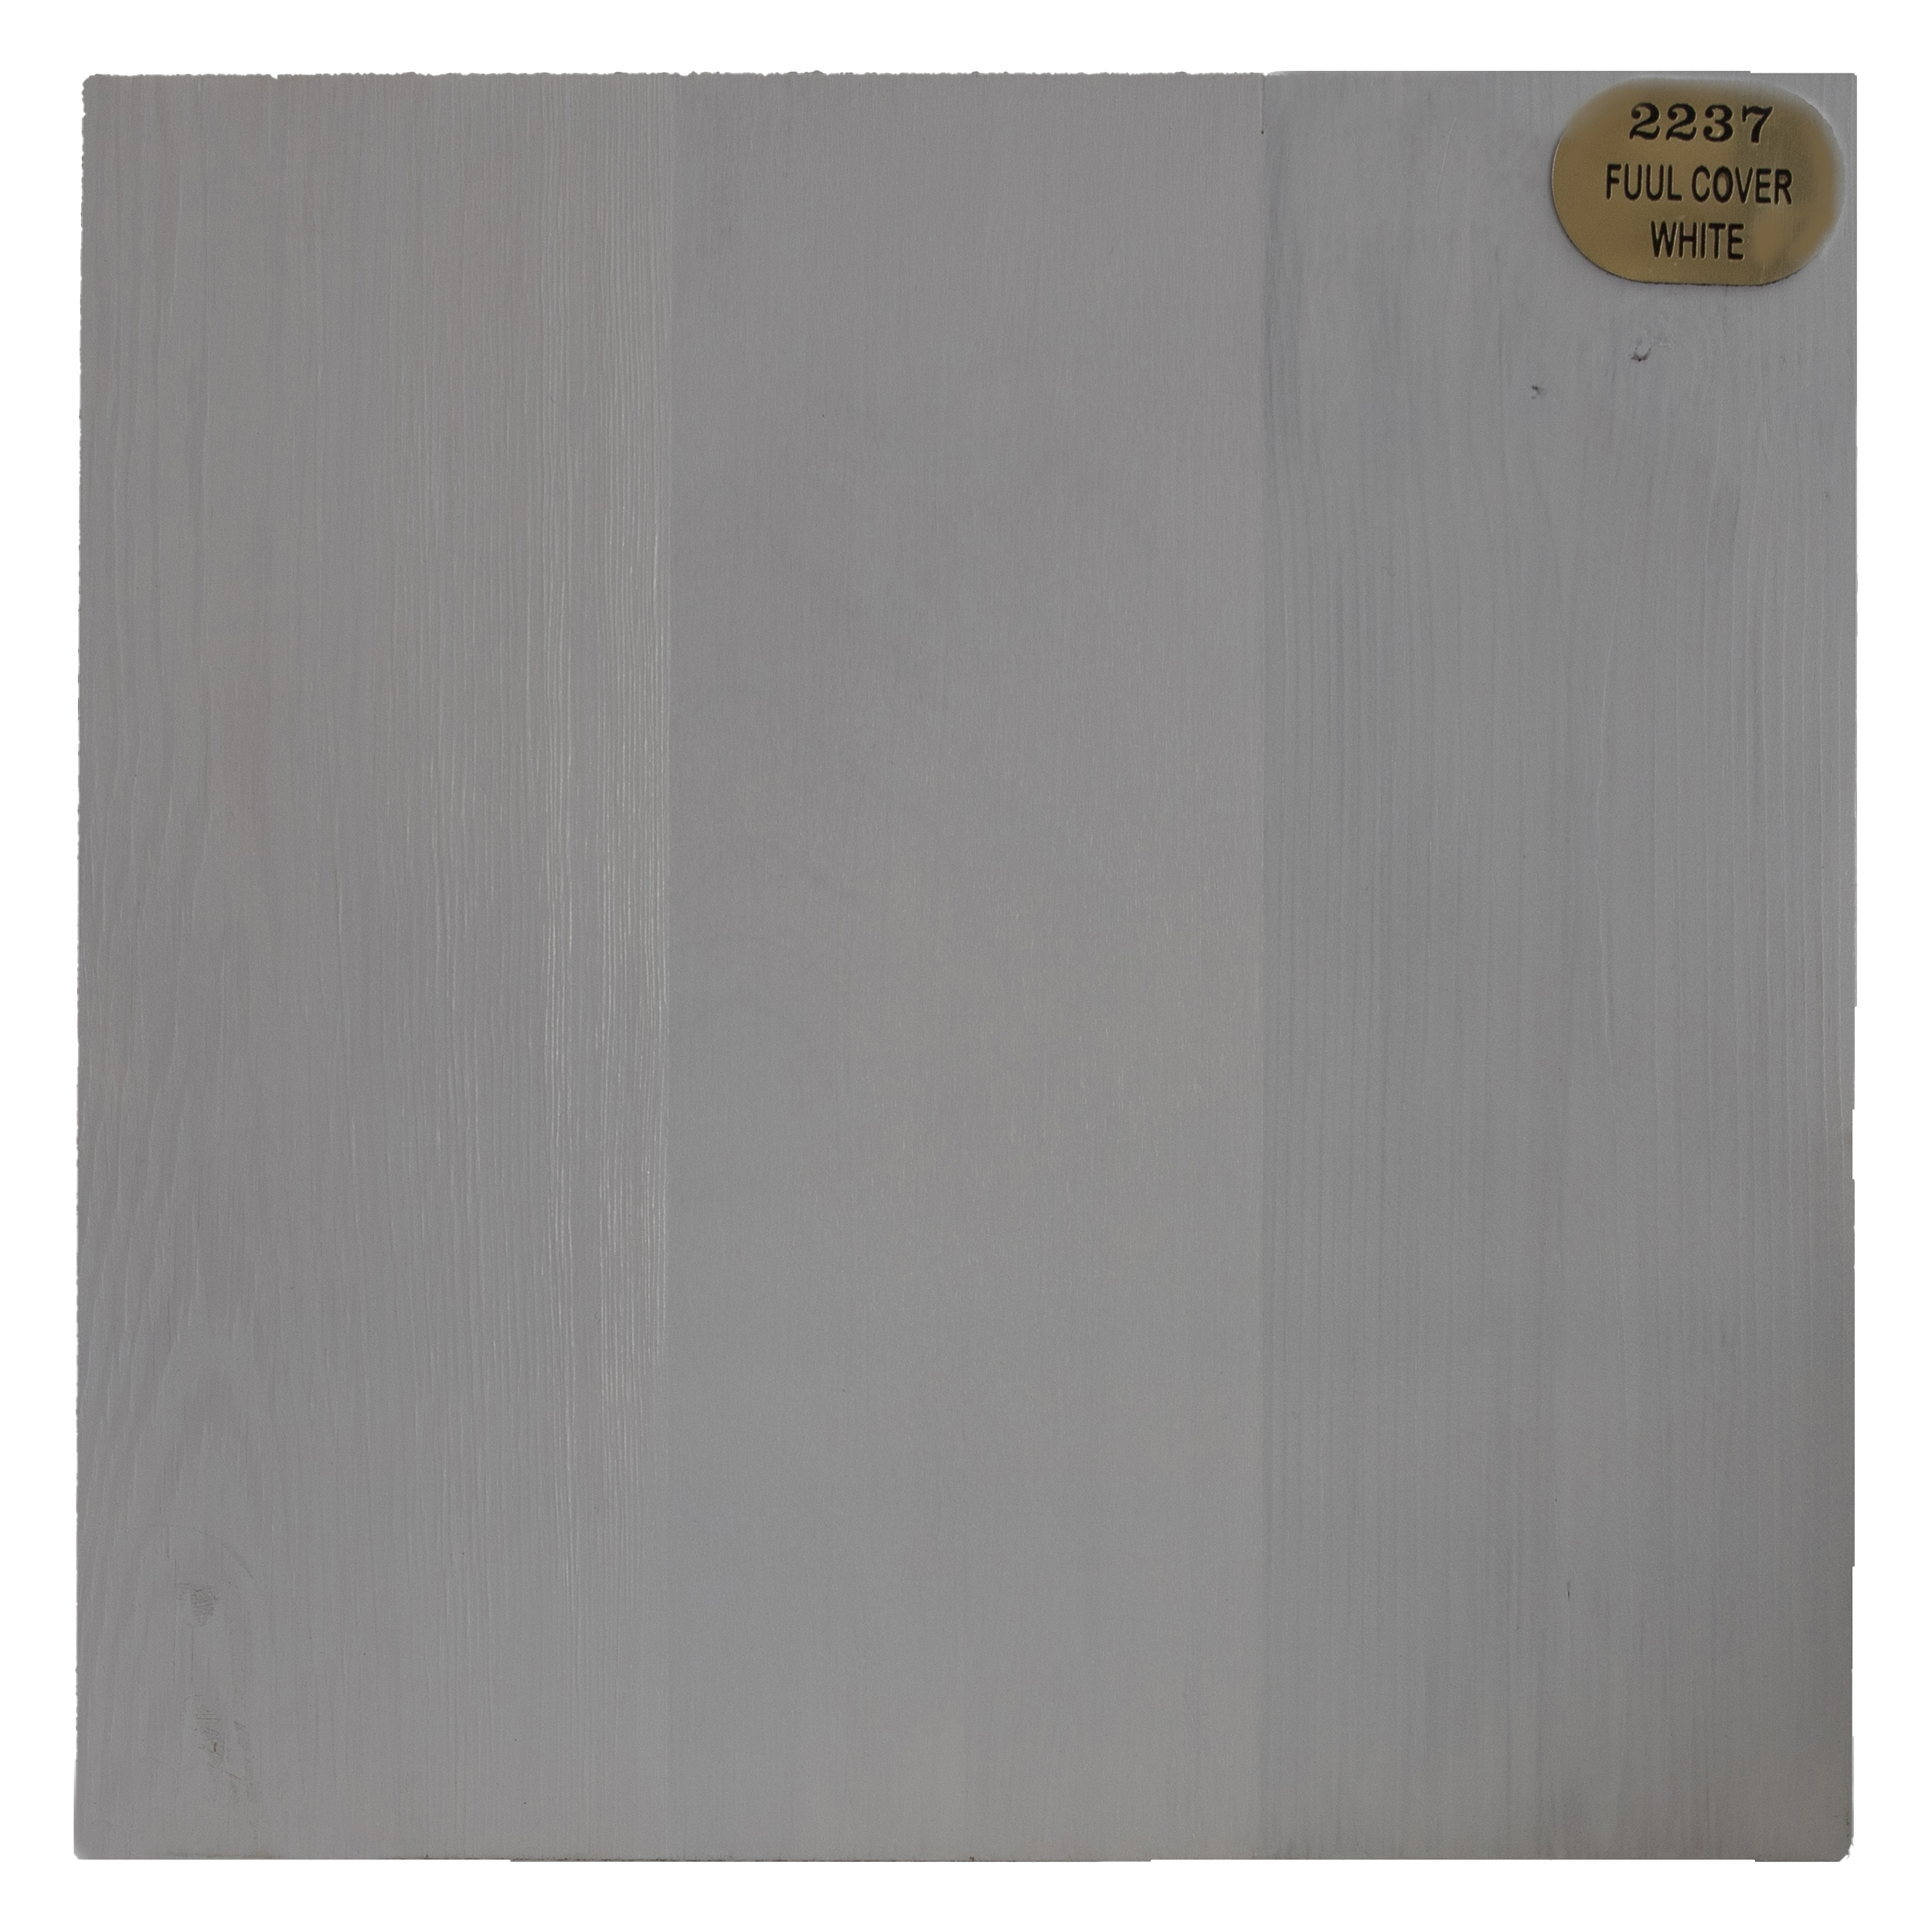 قیمت و خرید رنگ چوب پوشش سفید روم آرت کد 2237 حجم 1 لیتر